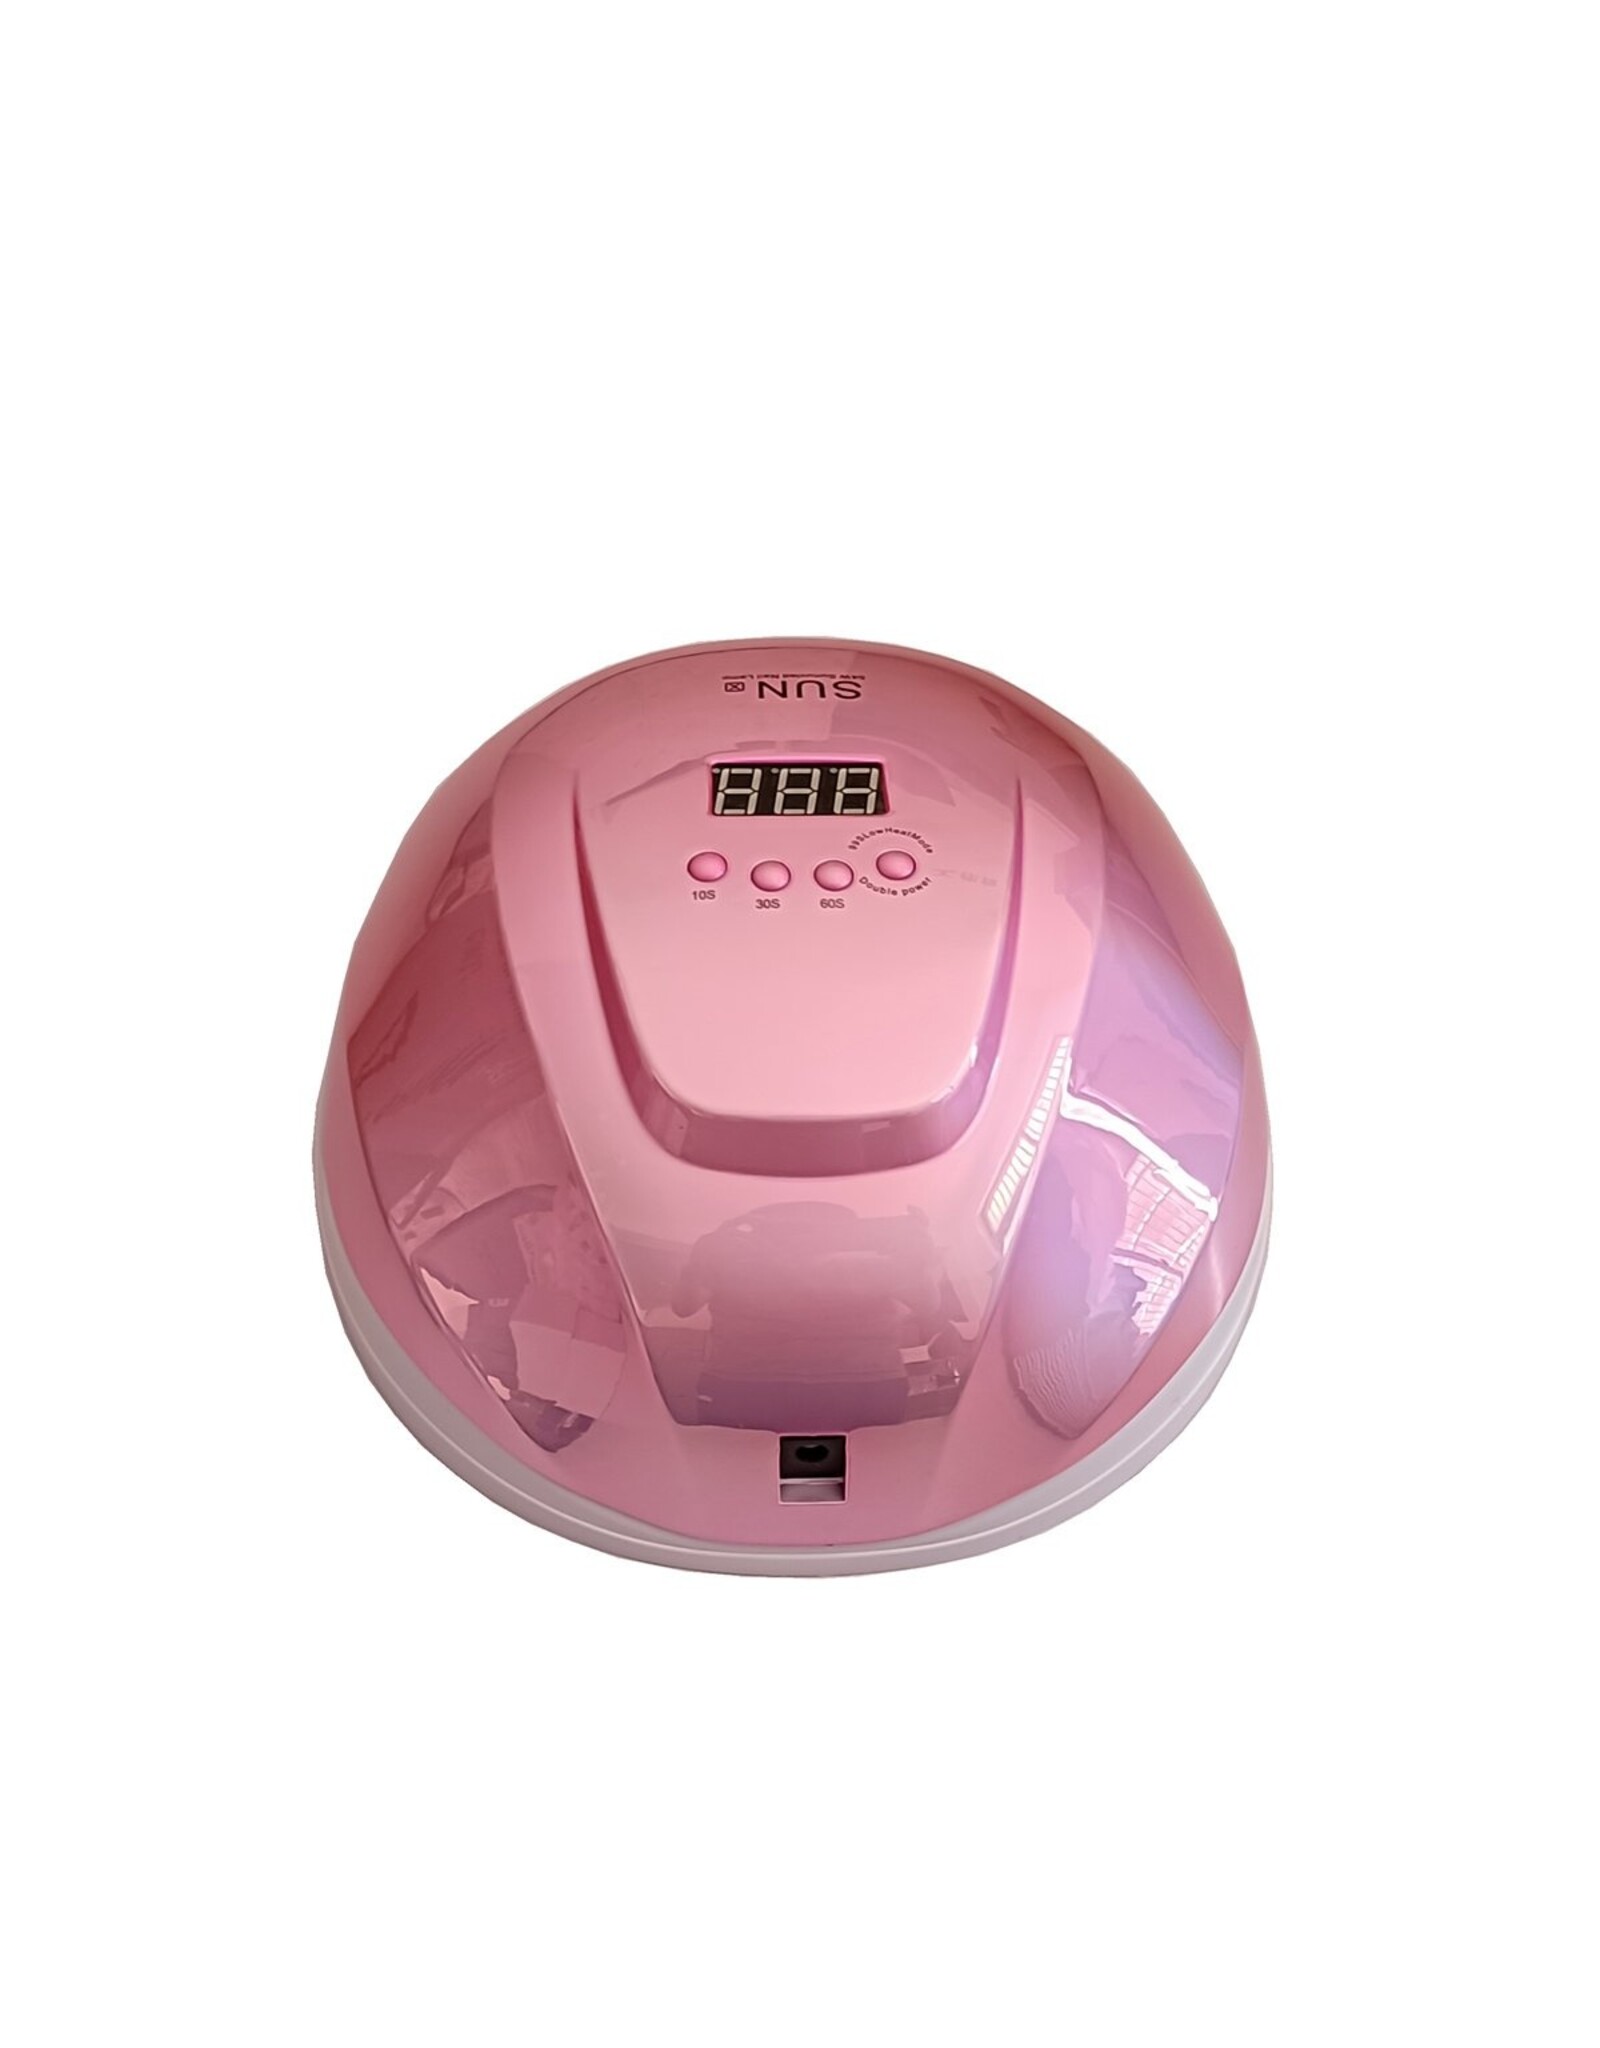 Mega Beauty Shop®  UV / LED lamp 54watt (shiny pink)